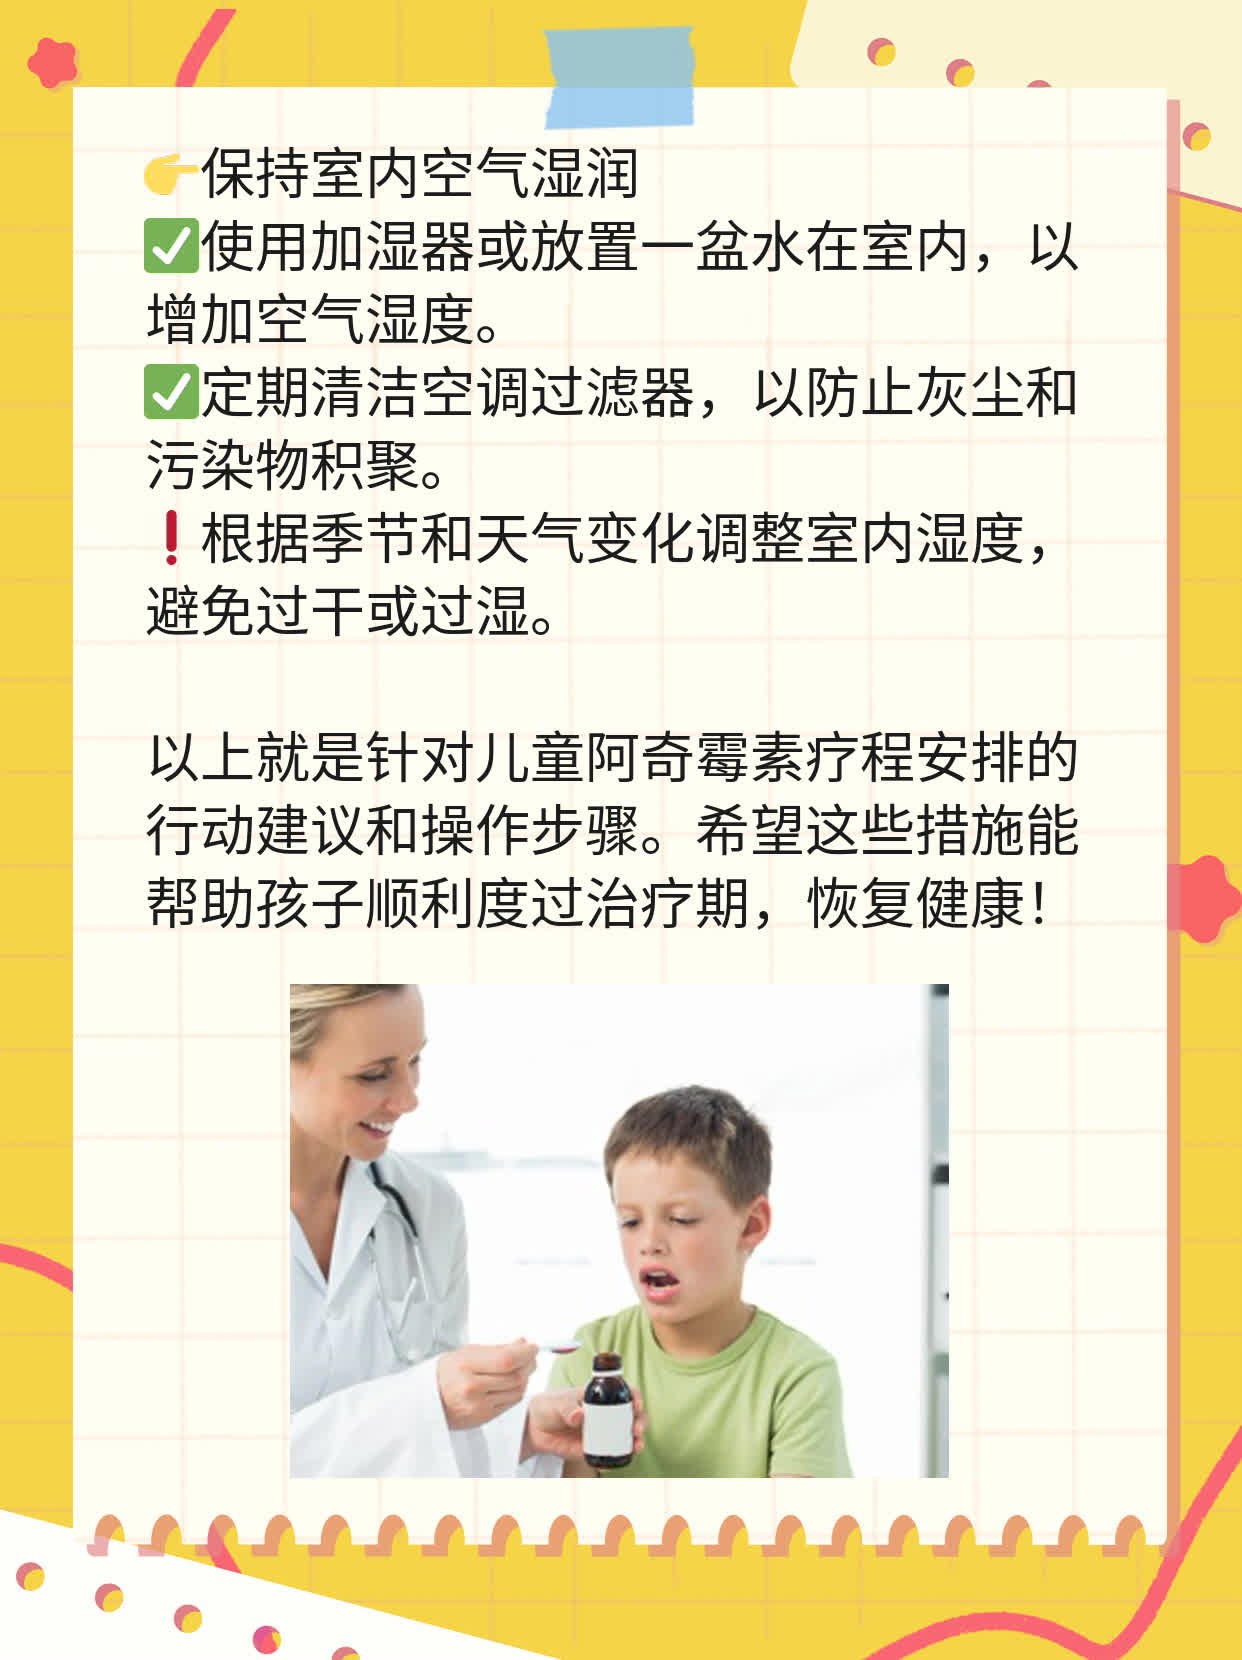 儿童阿奇霉素疗程安排：规范用药周期